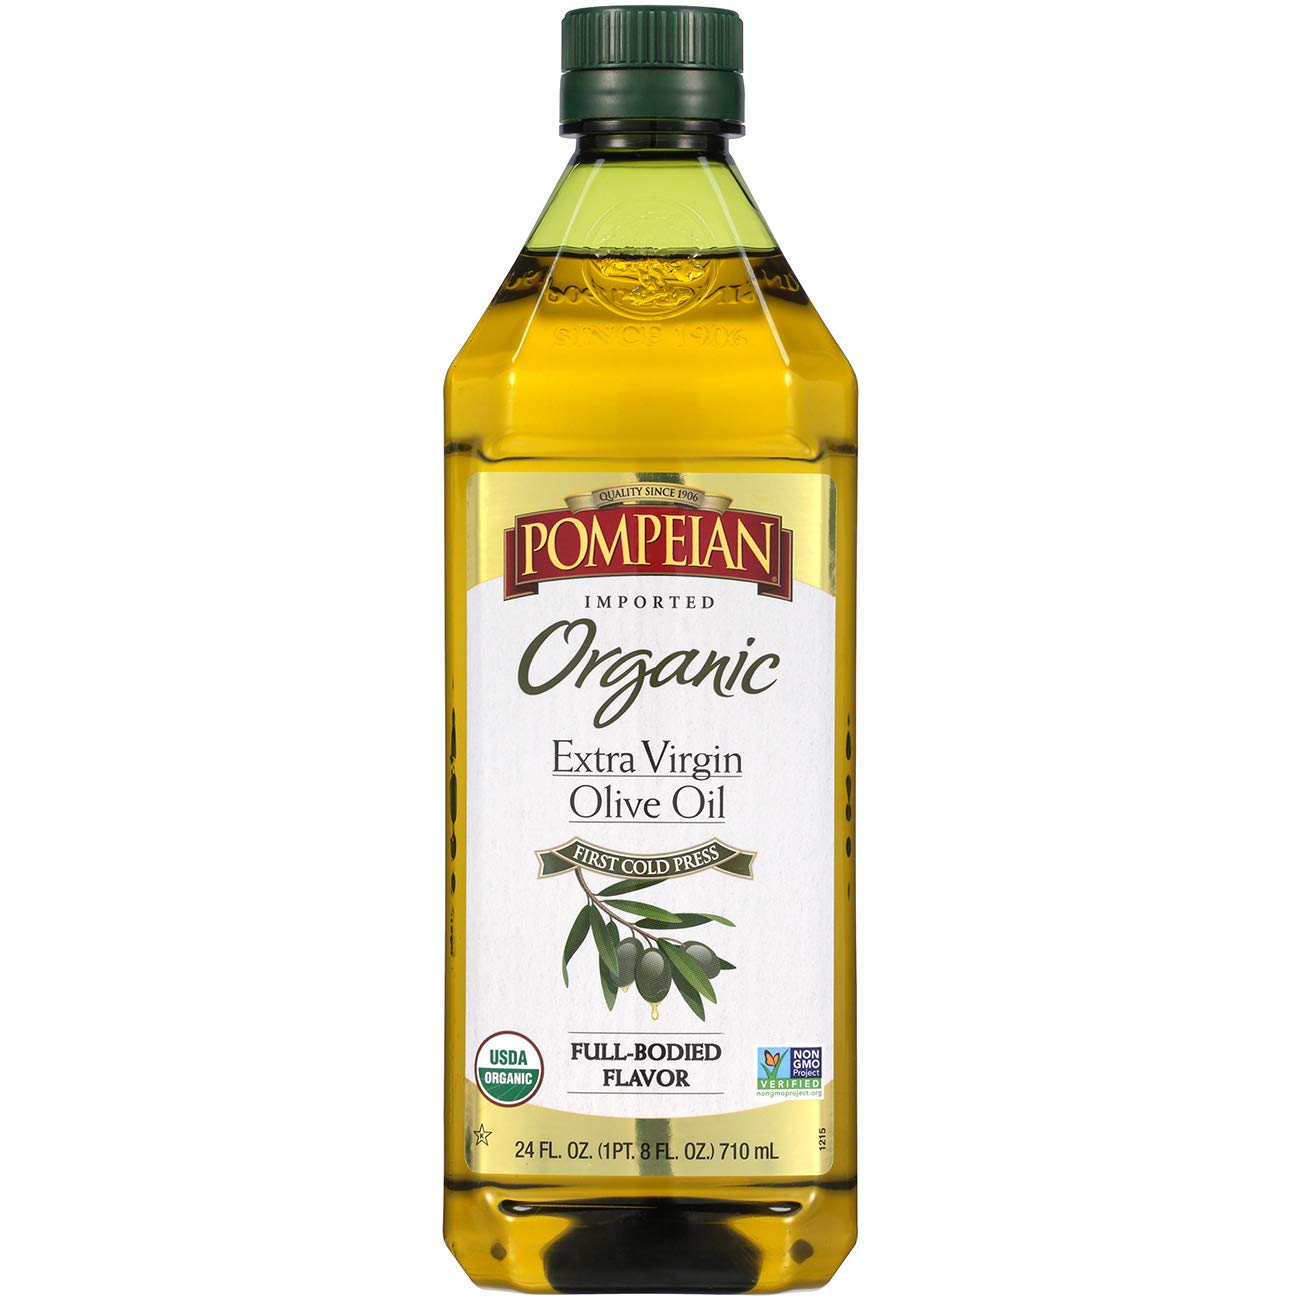 Турецкое оливковое масло. Оливковое масло Extra Virgin Olive Oil. Pompeian масло. Экстра Вирджин. Оливковое масло из Турции.